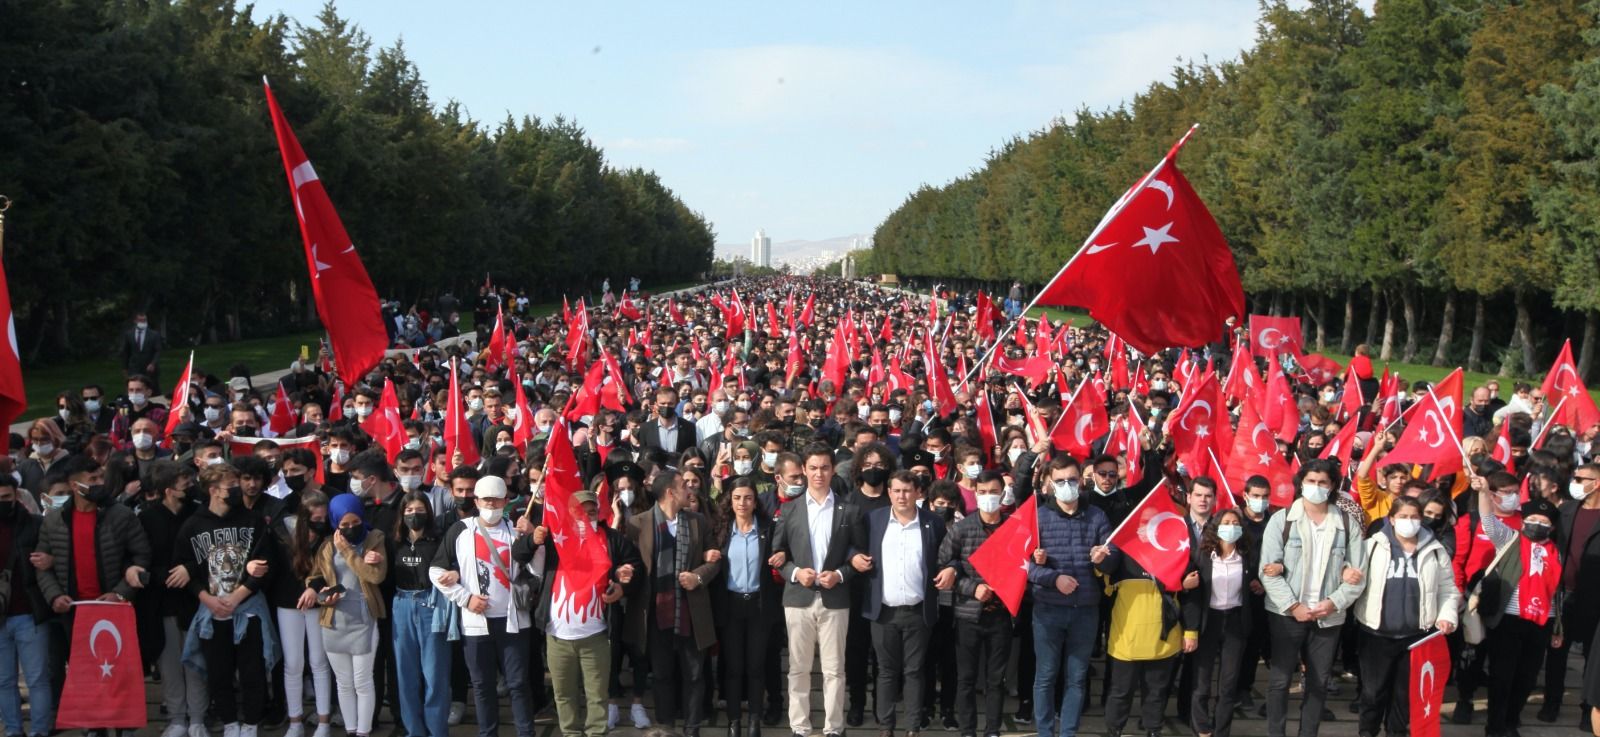 ABD’nin Kaos Planlarına Karşı Türk Gençliği Ayakta, Cumhuriyet Savaşıyor!